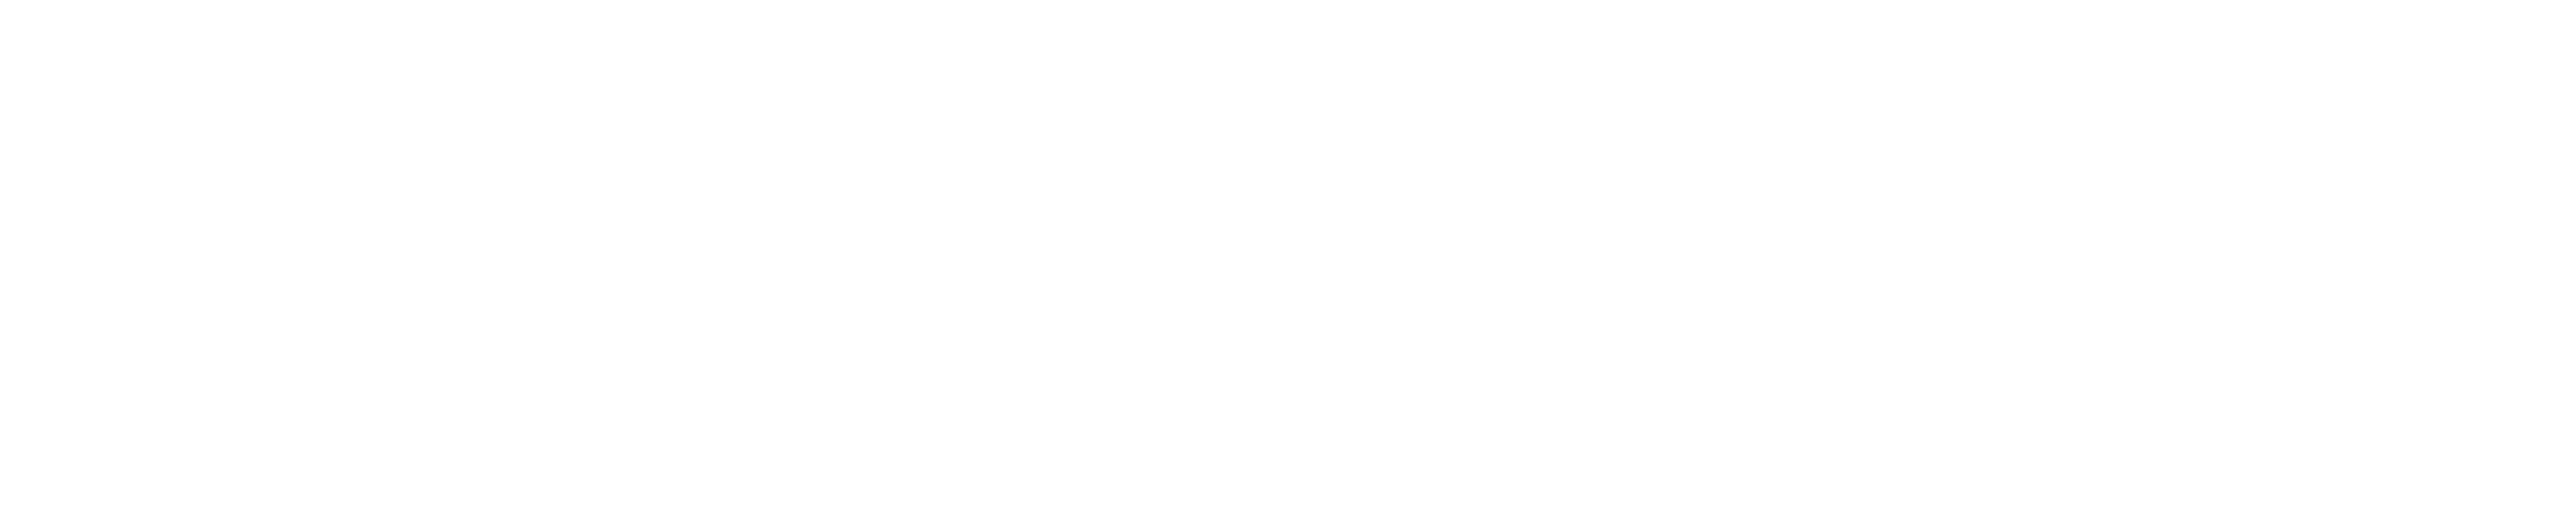 Big Time Data Logo